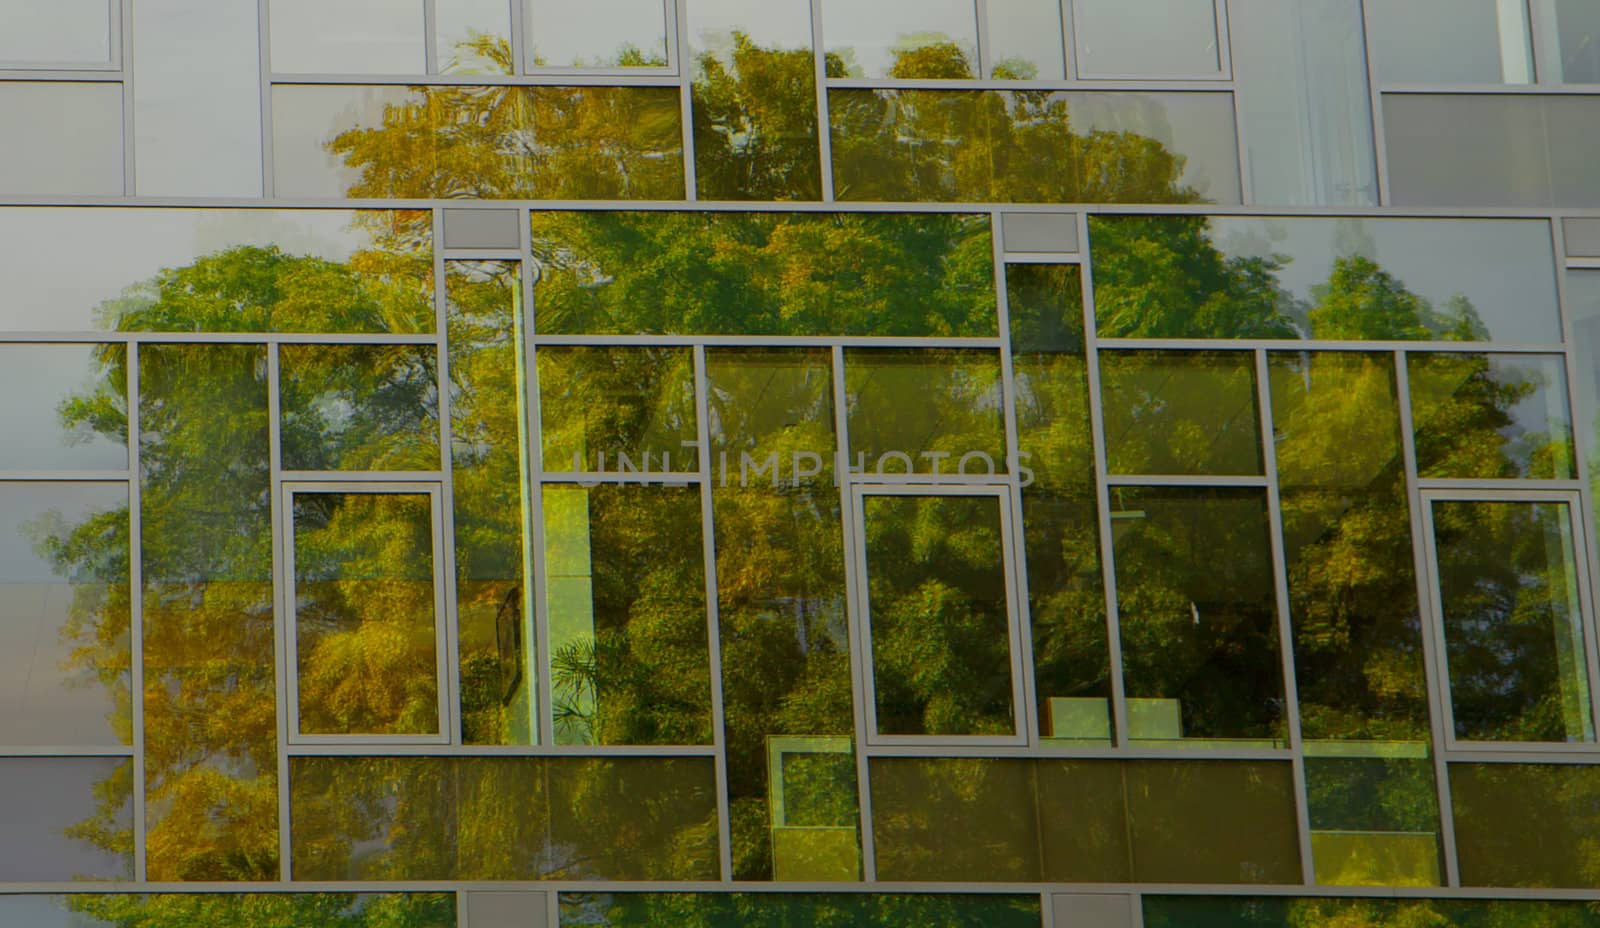 Tree Reflection in Building window by bobkeenan